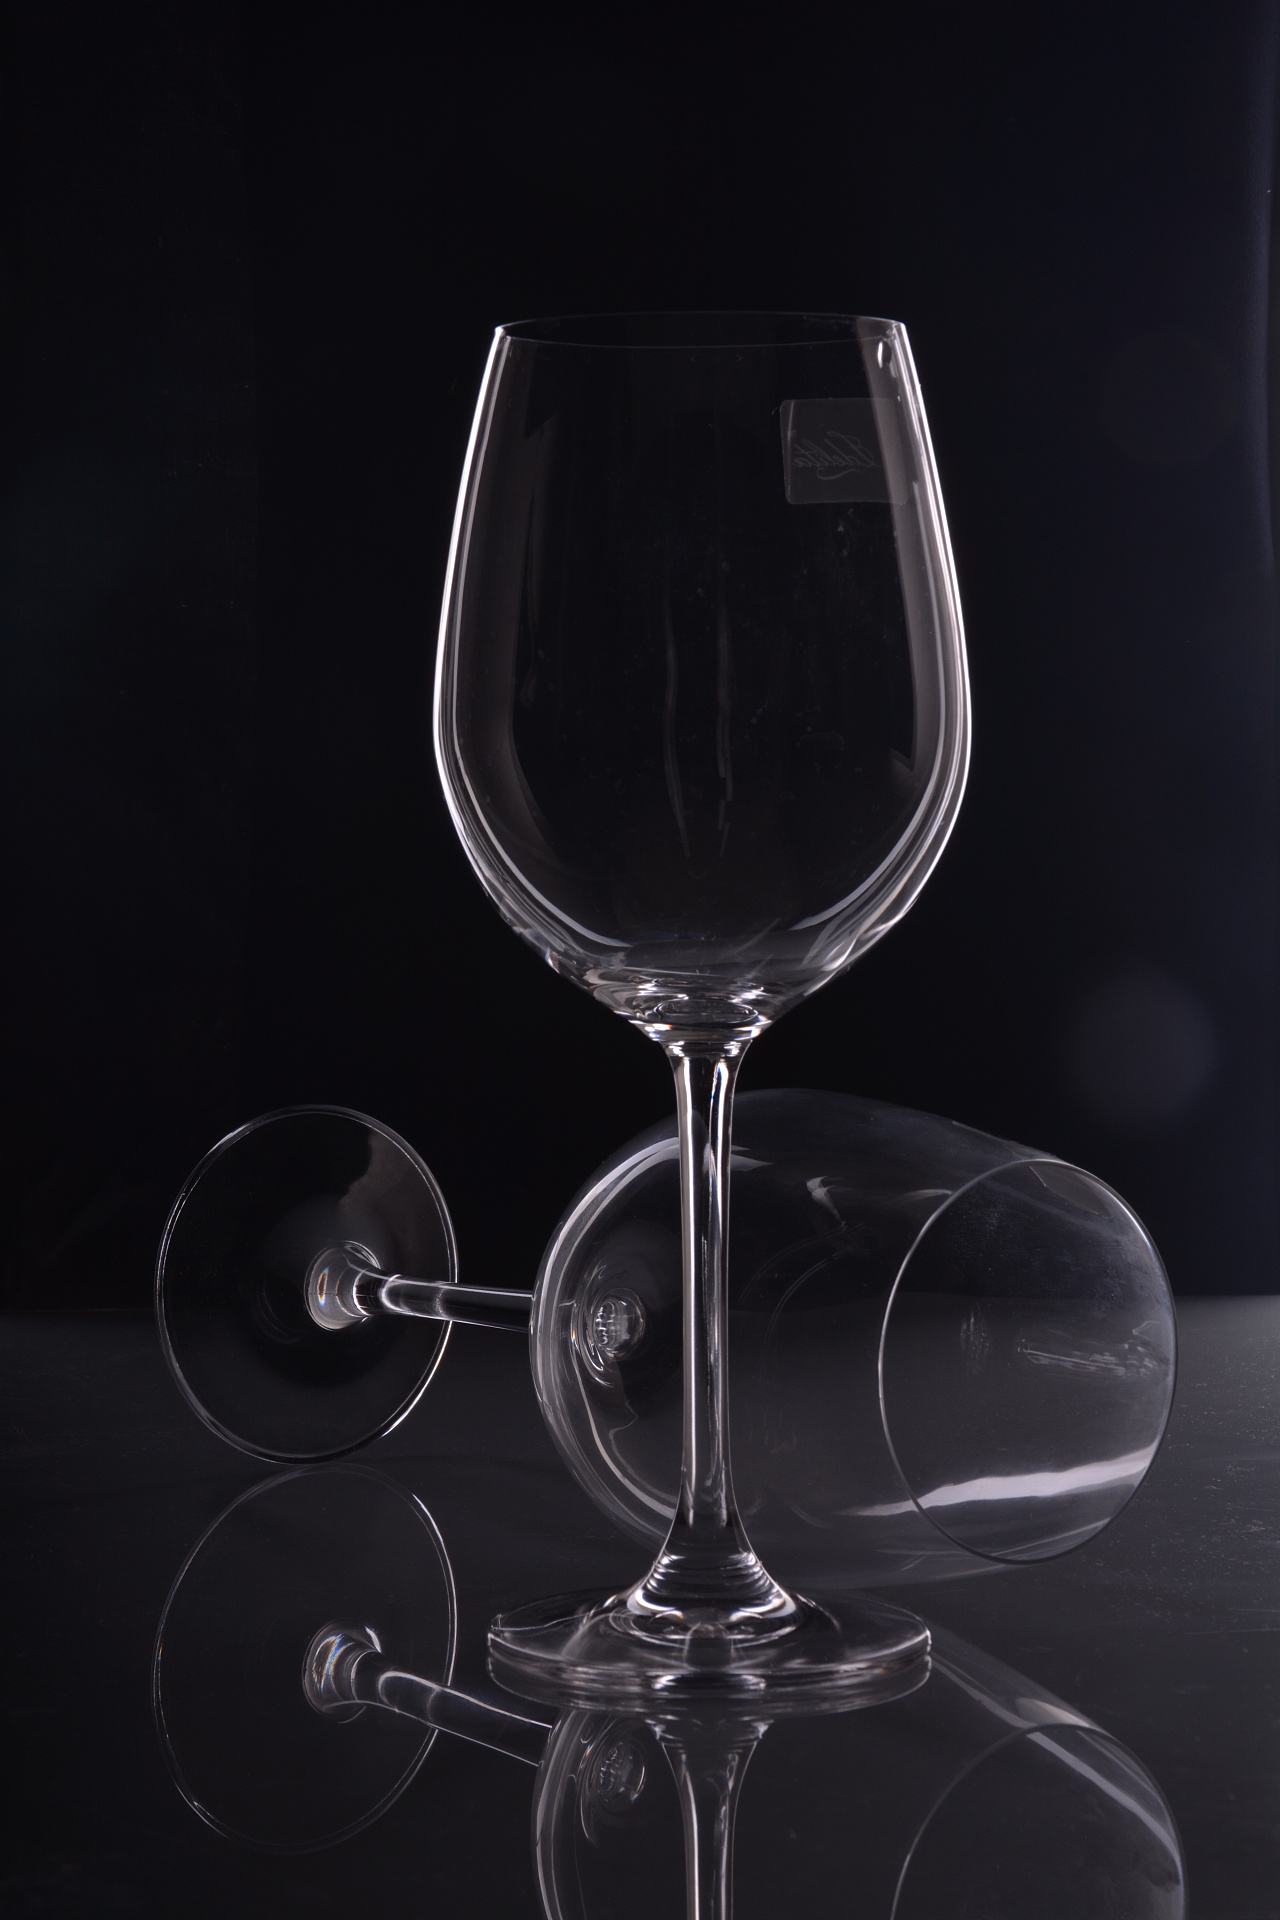 酒架红酒杯架酒杯架创意倒挂高脚杯架子家用葡萄酒杯架挂杯架摆件-阿里巴巴